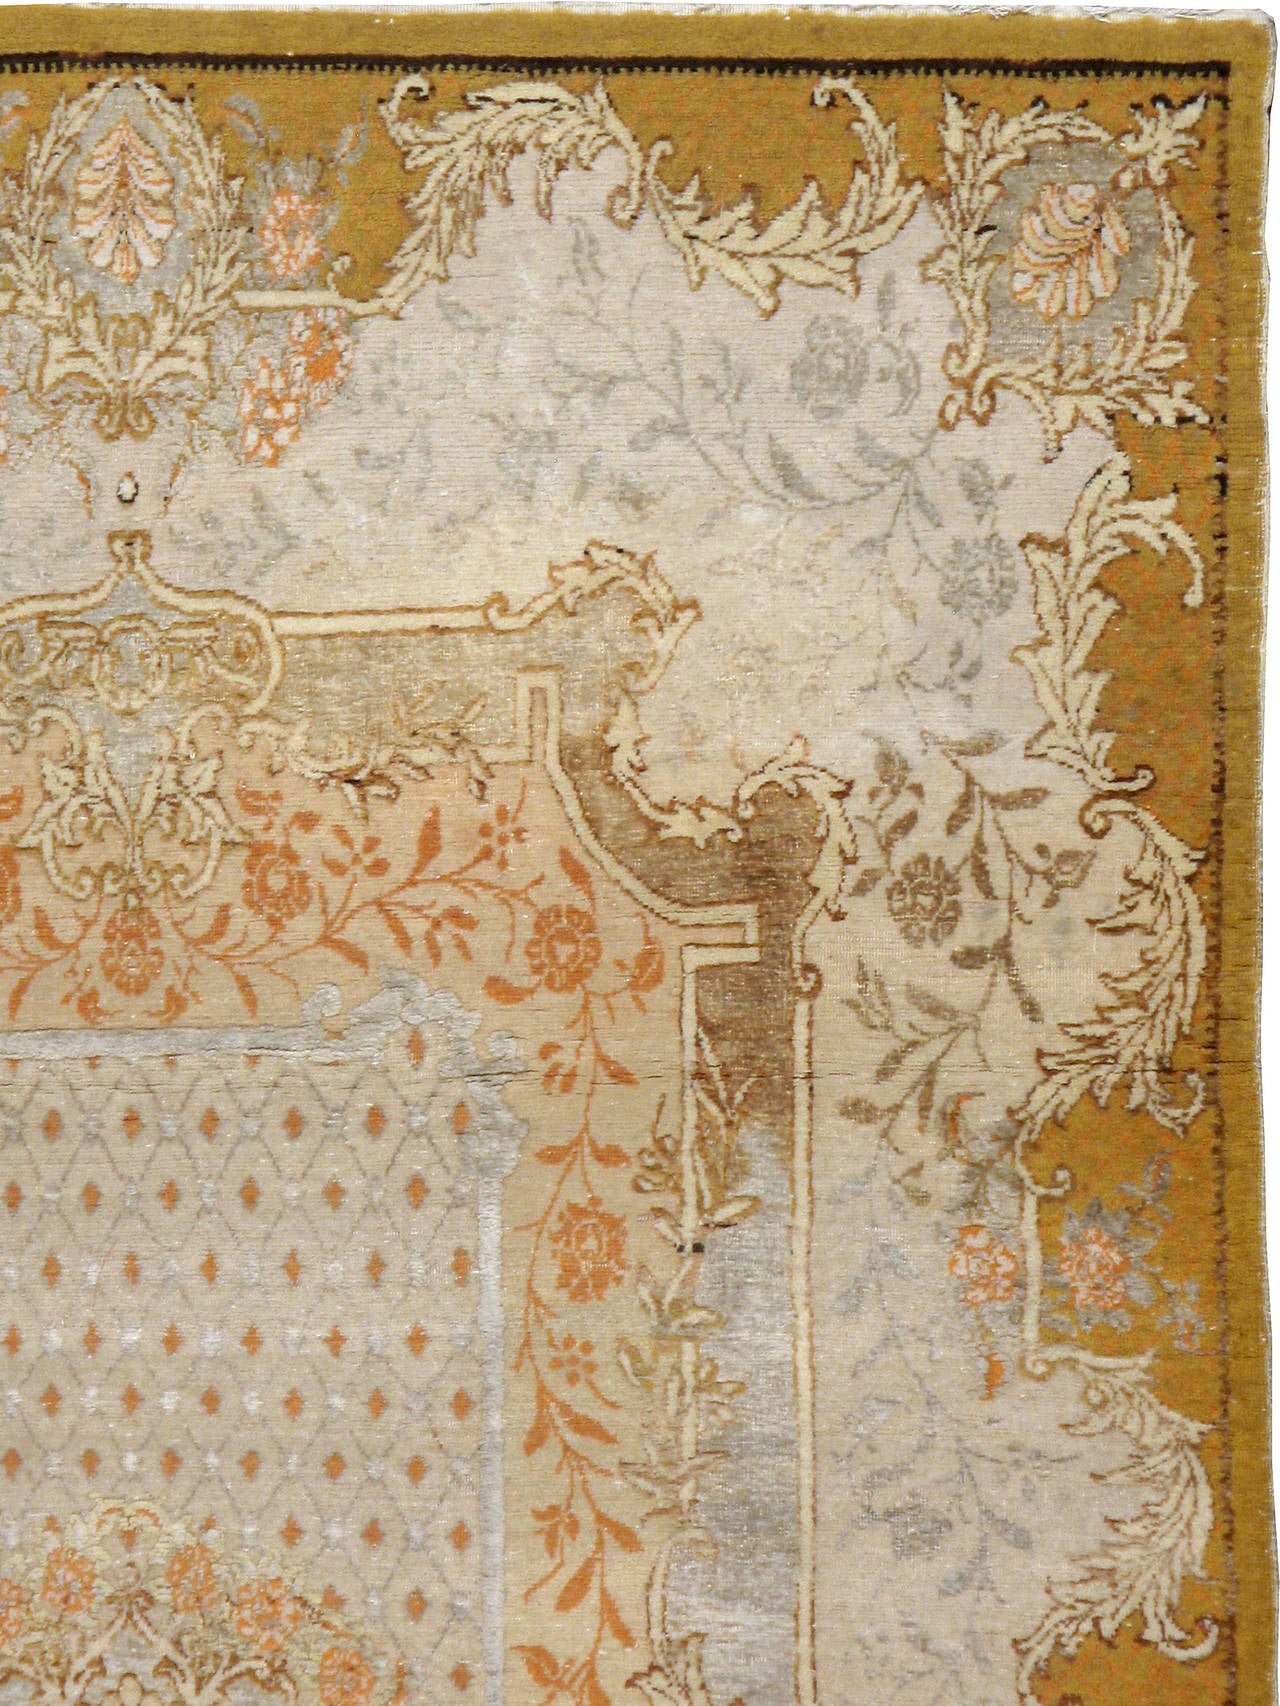 Ein antiker türkischer Souf Hereke Teppich aus dem ersten Viertel des 20. Jahrhunderts. Das Medaillon und der Schutzrand zeigen ein elegantes florales Muster, das durch eine verschlungene Ranke und Schnecke verbunden ist. Einige der Muster wurden in